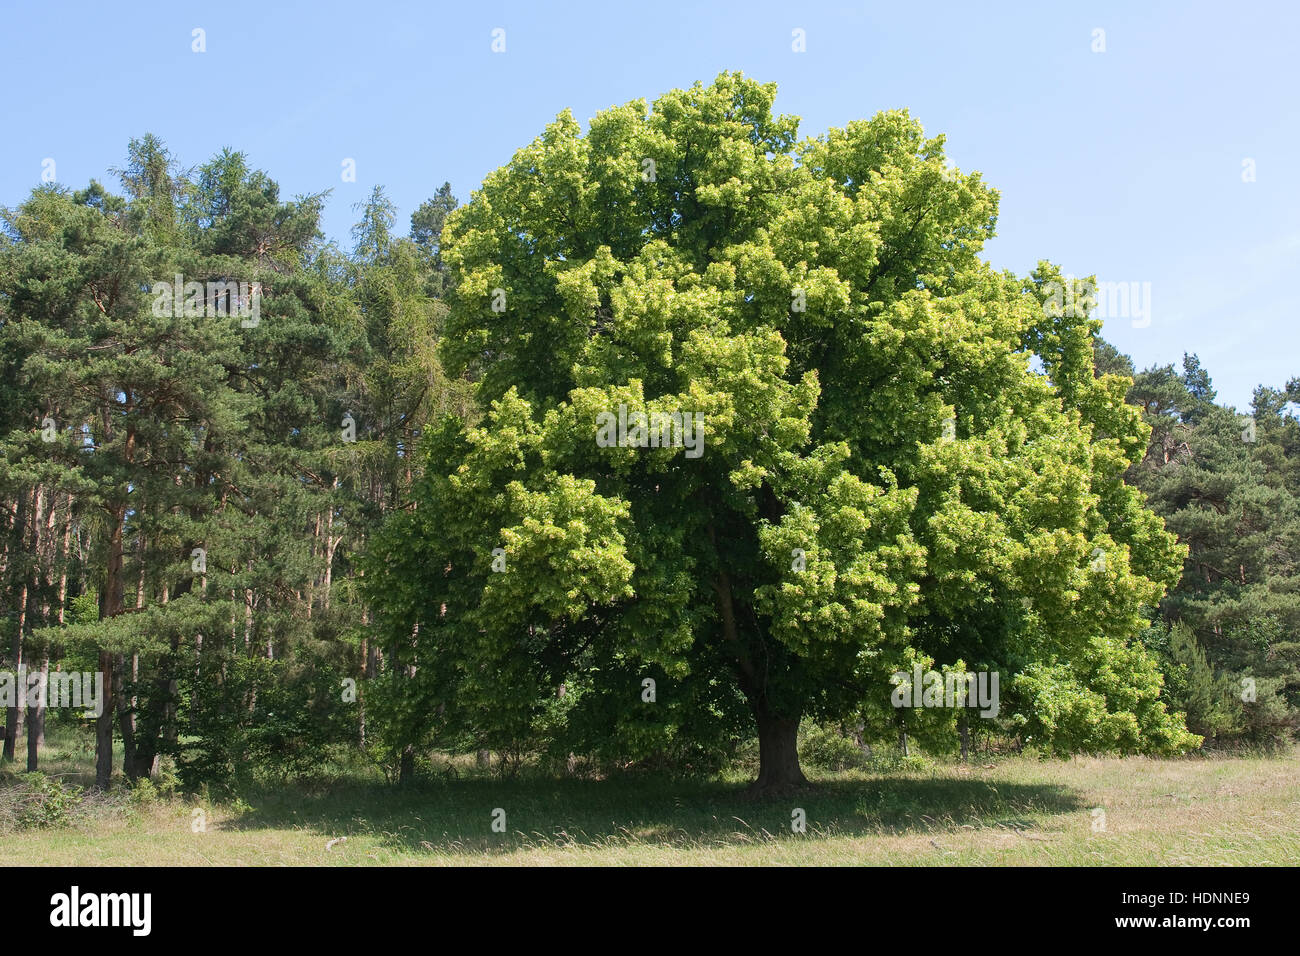 Sommer-Linde, Sommerlinde, Linde, Tilia platyphyllos, grandes feuilles Lime Banque D'Images